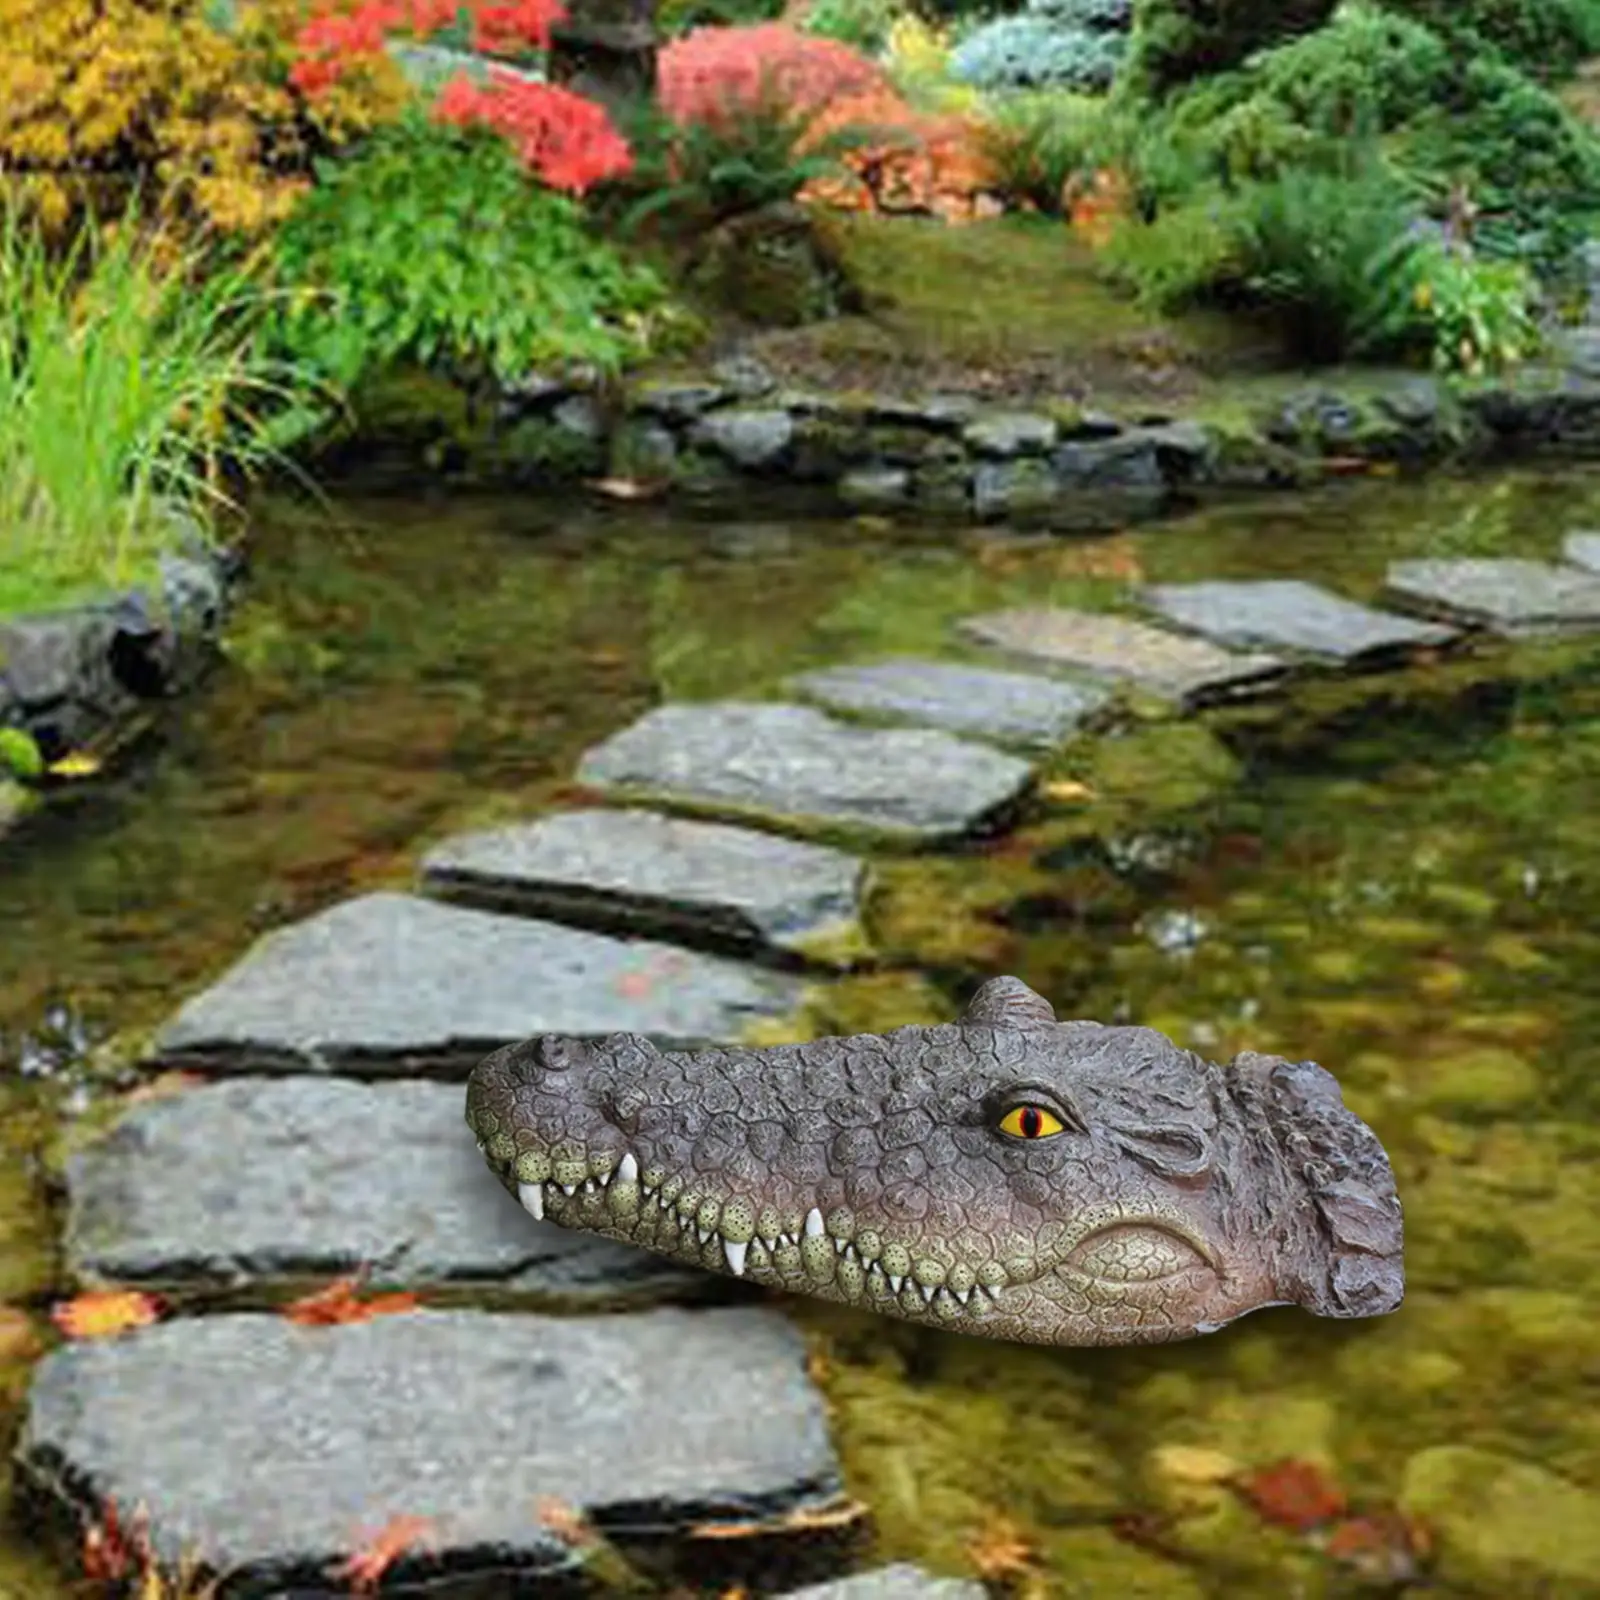 Simulation Floating Crocodile Head Water Decoy Prank Toy Alligator Head Gator Head for Pool Pond Patio Decoration Ornament